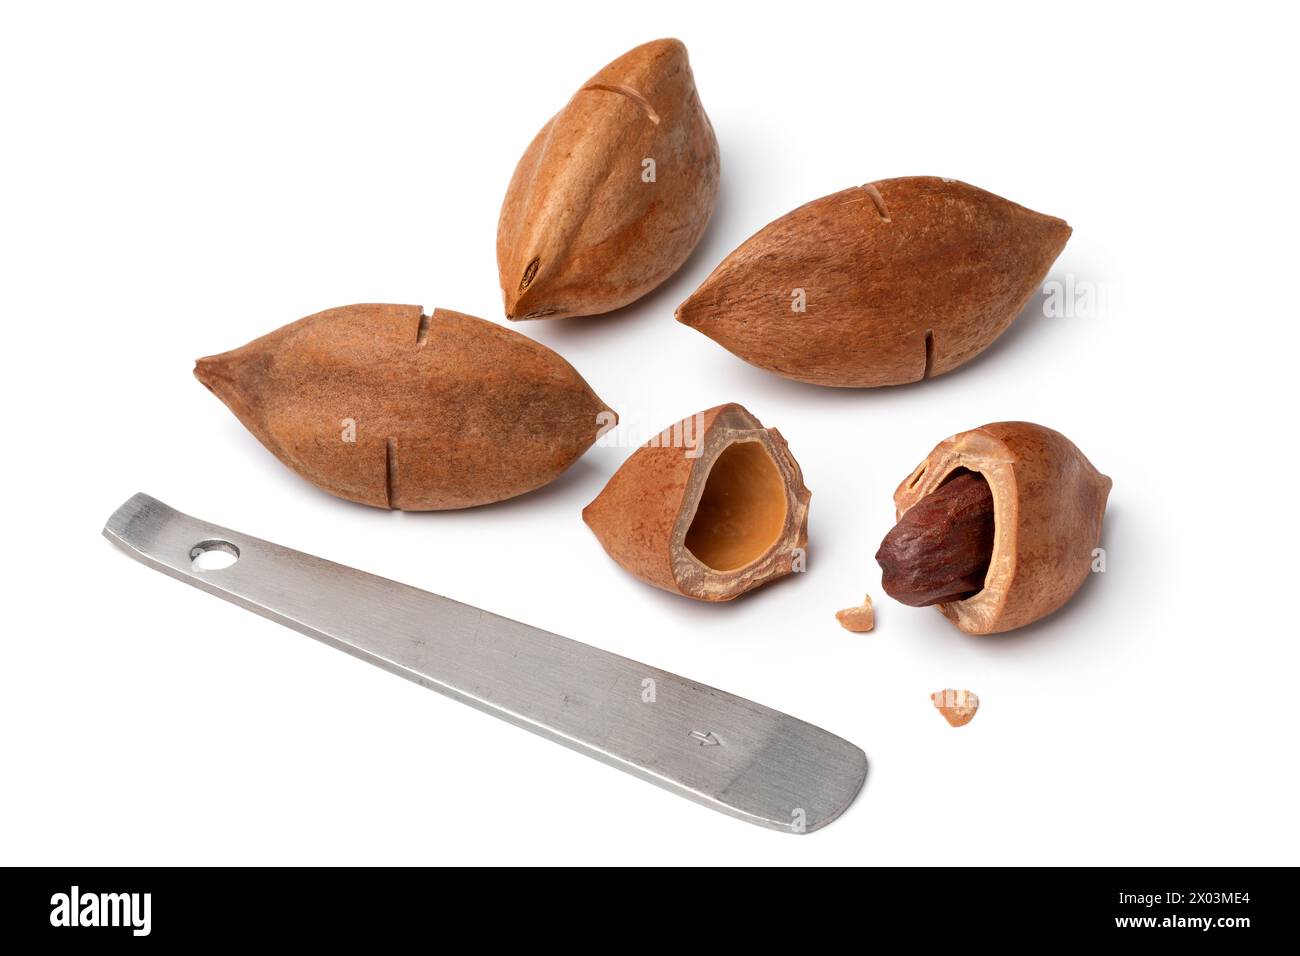 Shelled pili nut, whole pili nuts and opener close up isolated on white background Stock Photo